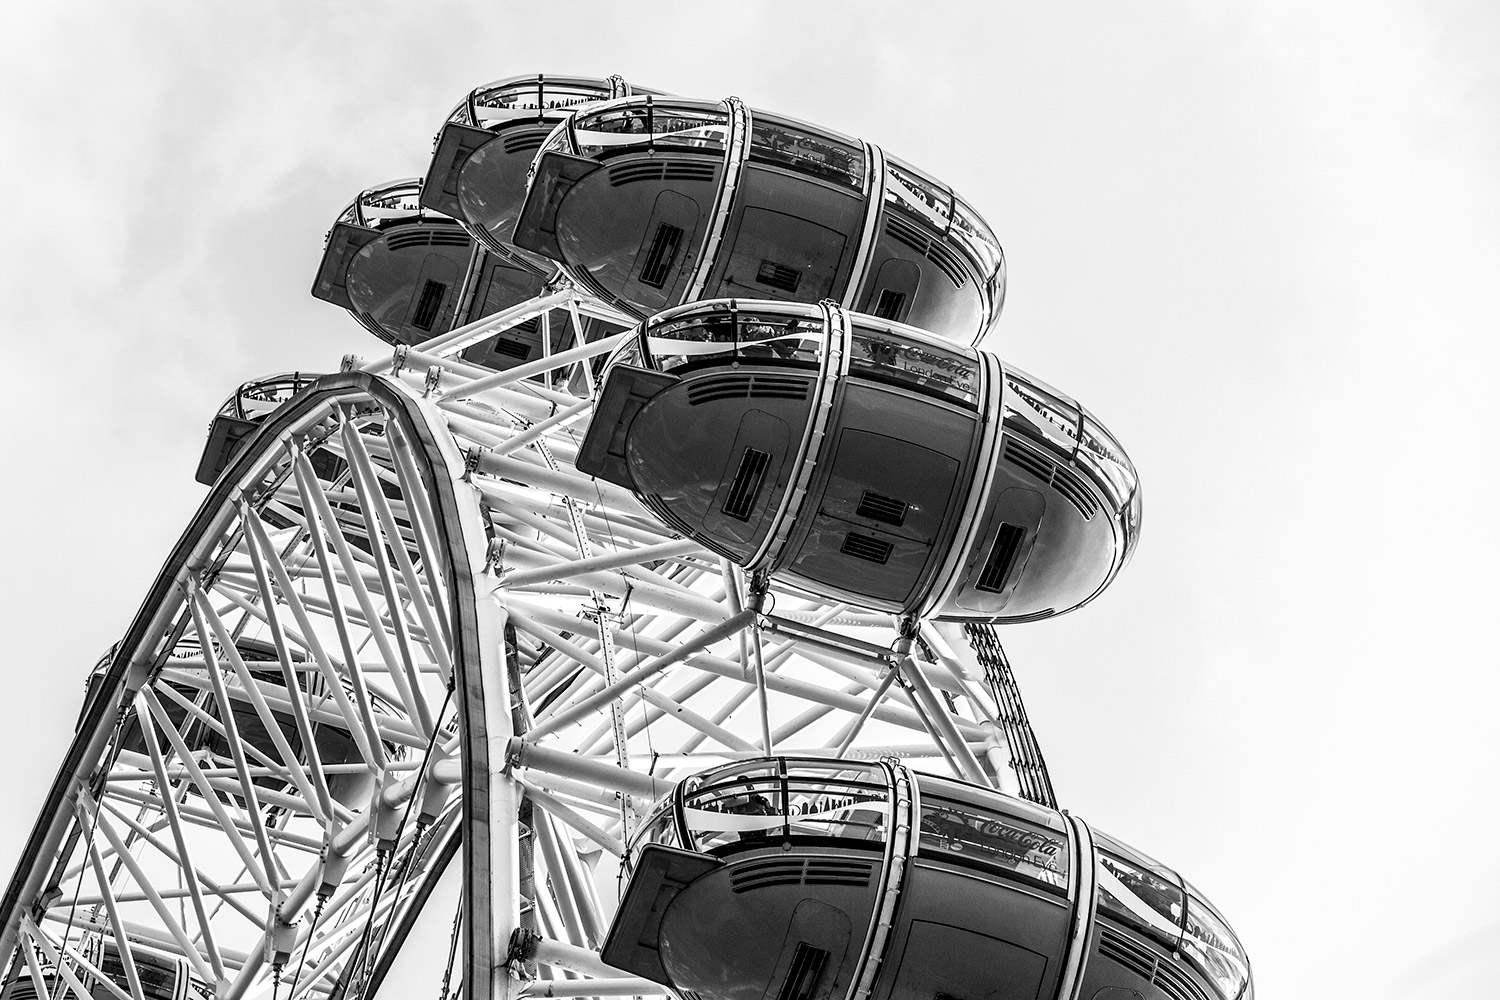 London Eye ferris wheel